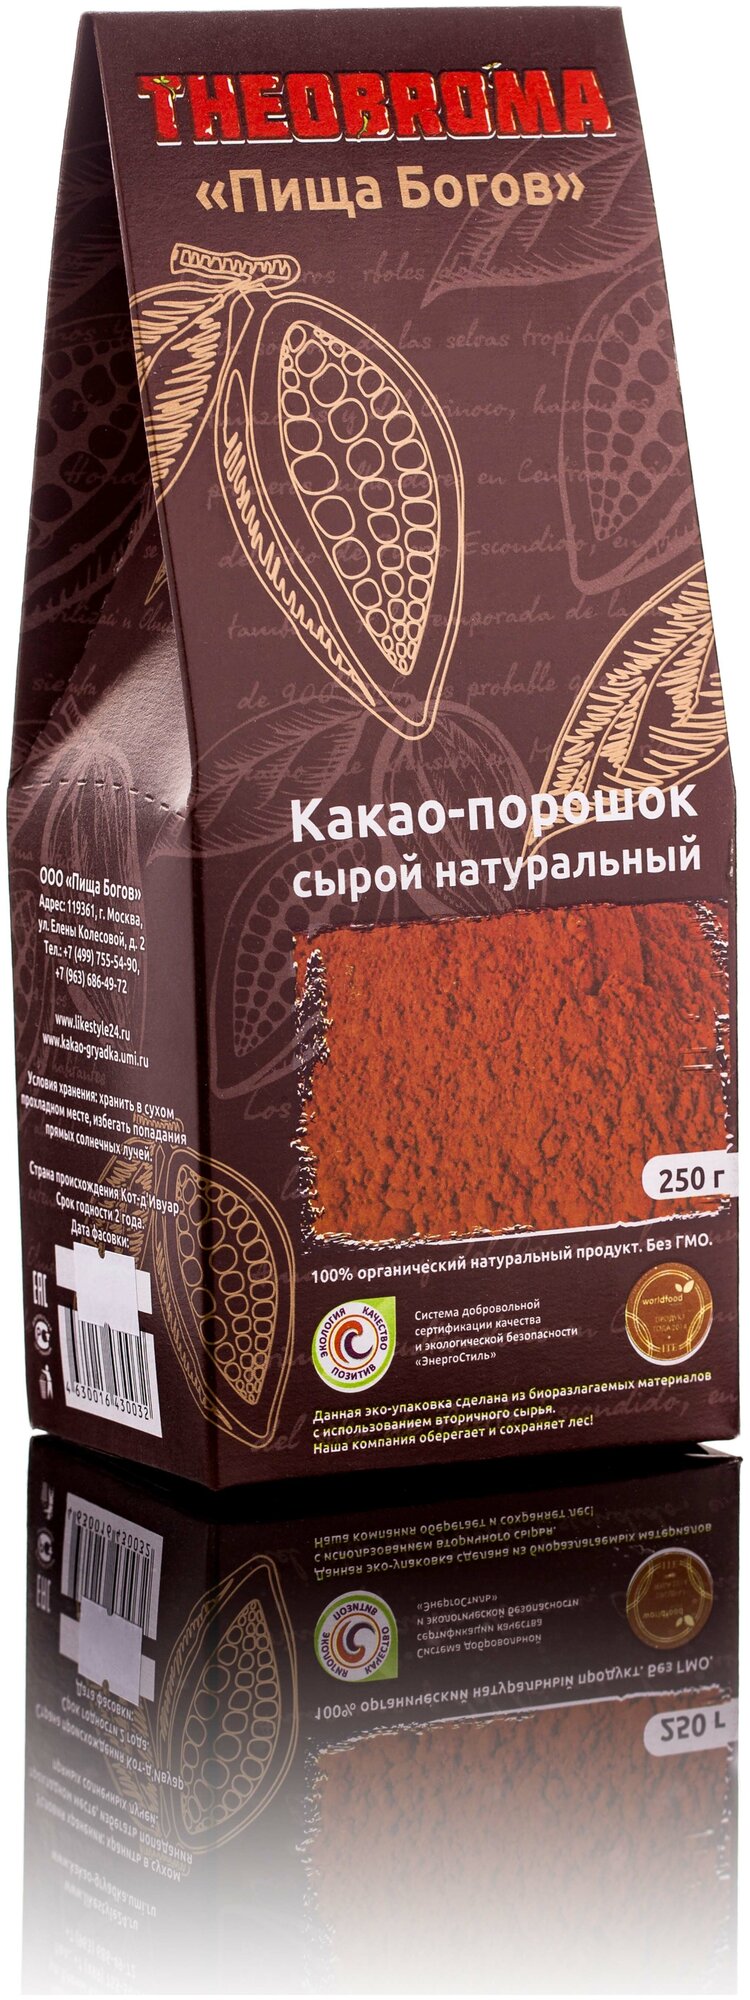 Theobroma Пища Богов Какао-порошок натуральный для варки, 250 г